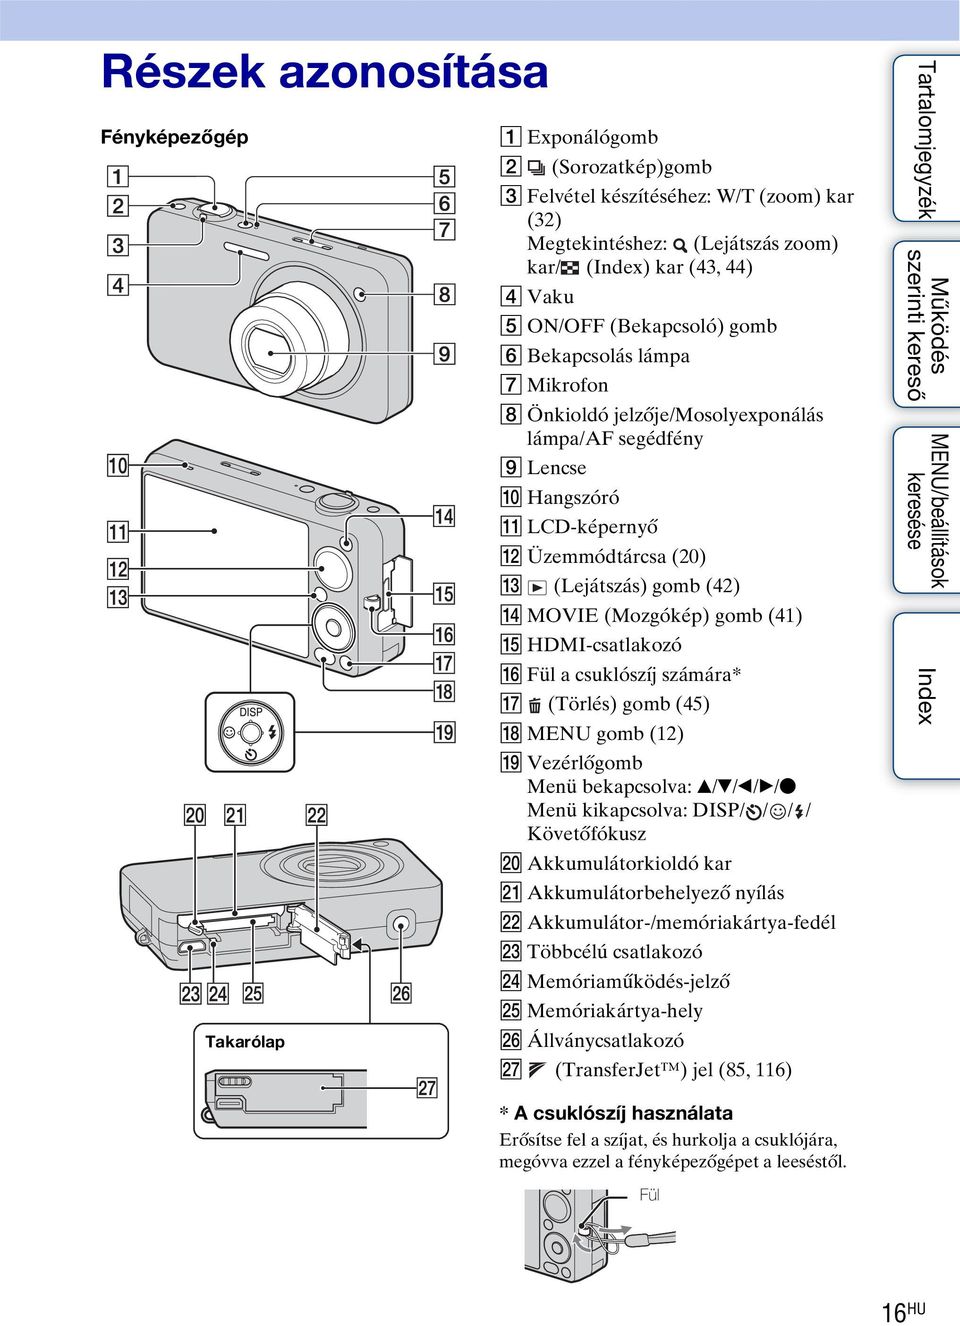 (Mozgókép) gomb (41) O HDMI-csatlakozó P Fül a csuklószíj számára* Q (Törlés) gomb (45) R MENU gomb (12) S Vezérlőgomb Menü bekapcsolva: v/v/b/b/z Menü kikapcsolva: DISP/ / / / Követőfókusz T